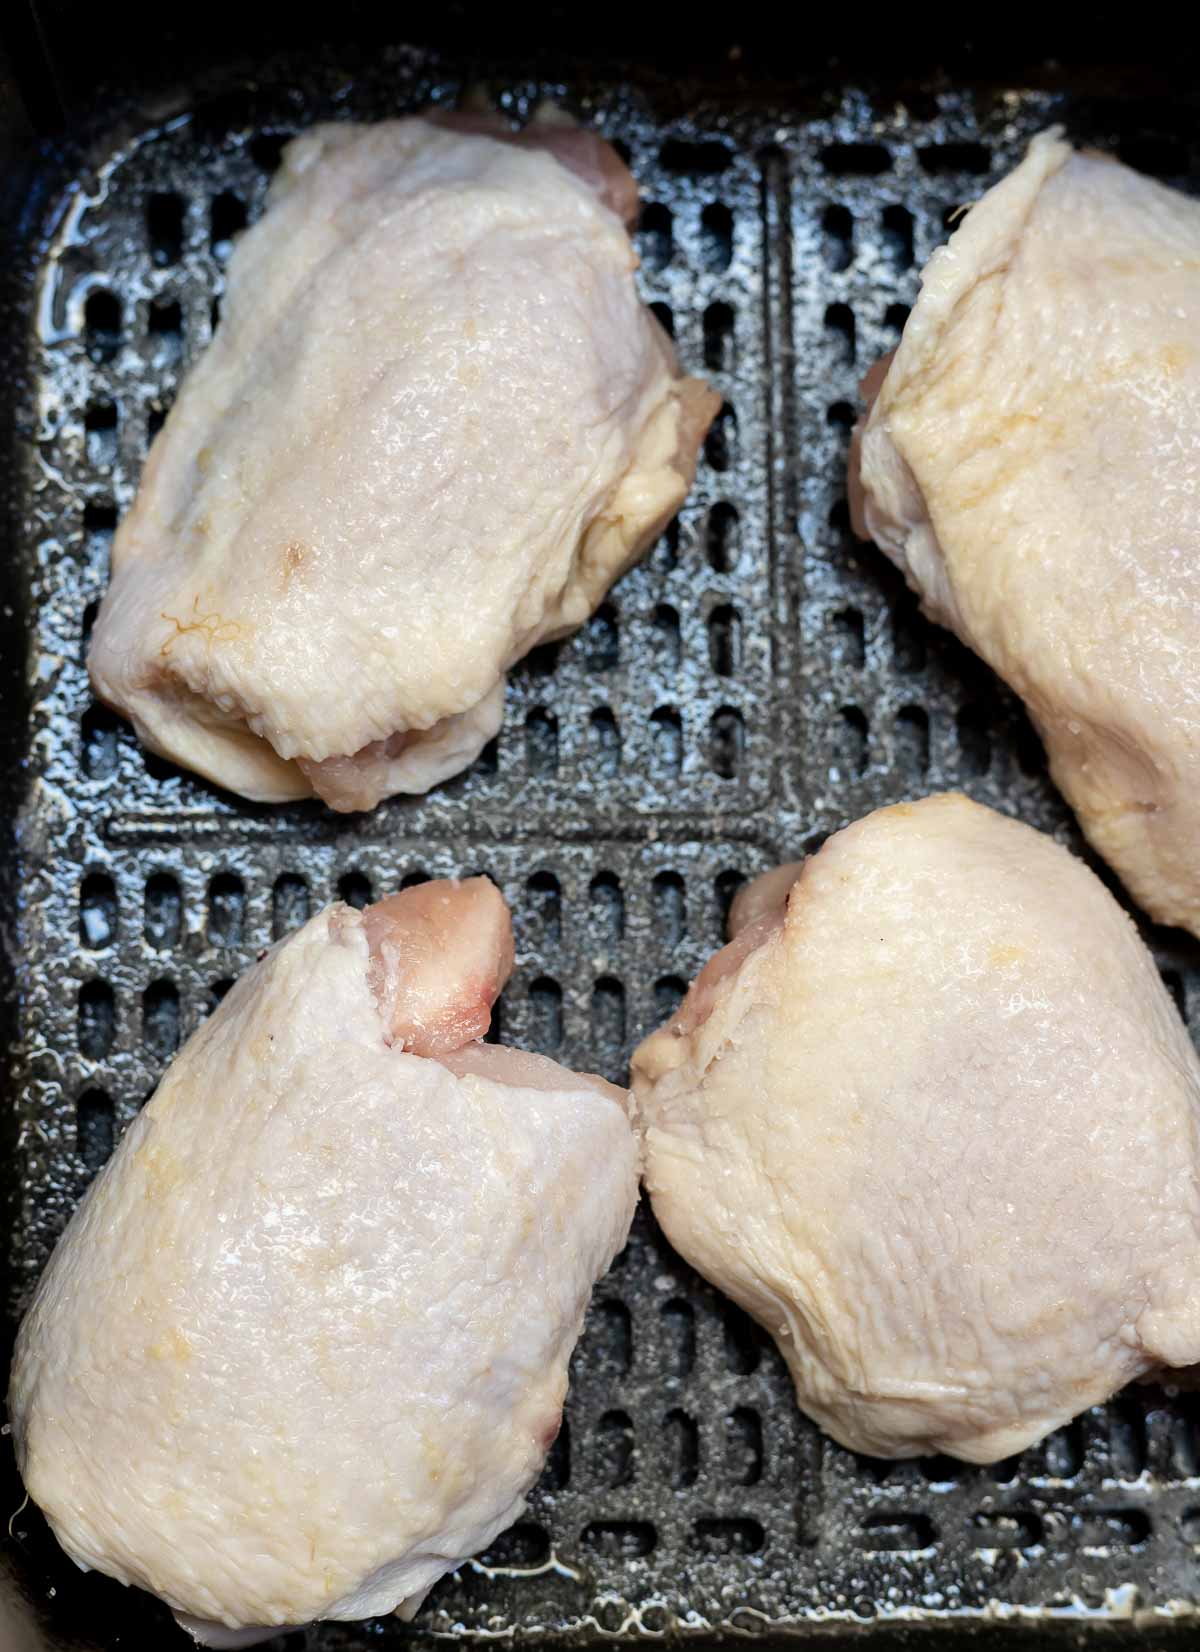 raw chicken thighs in air fryer basket